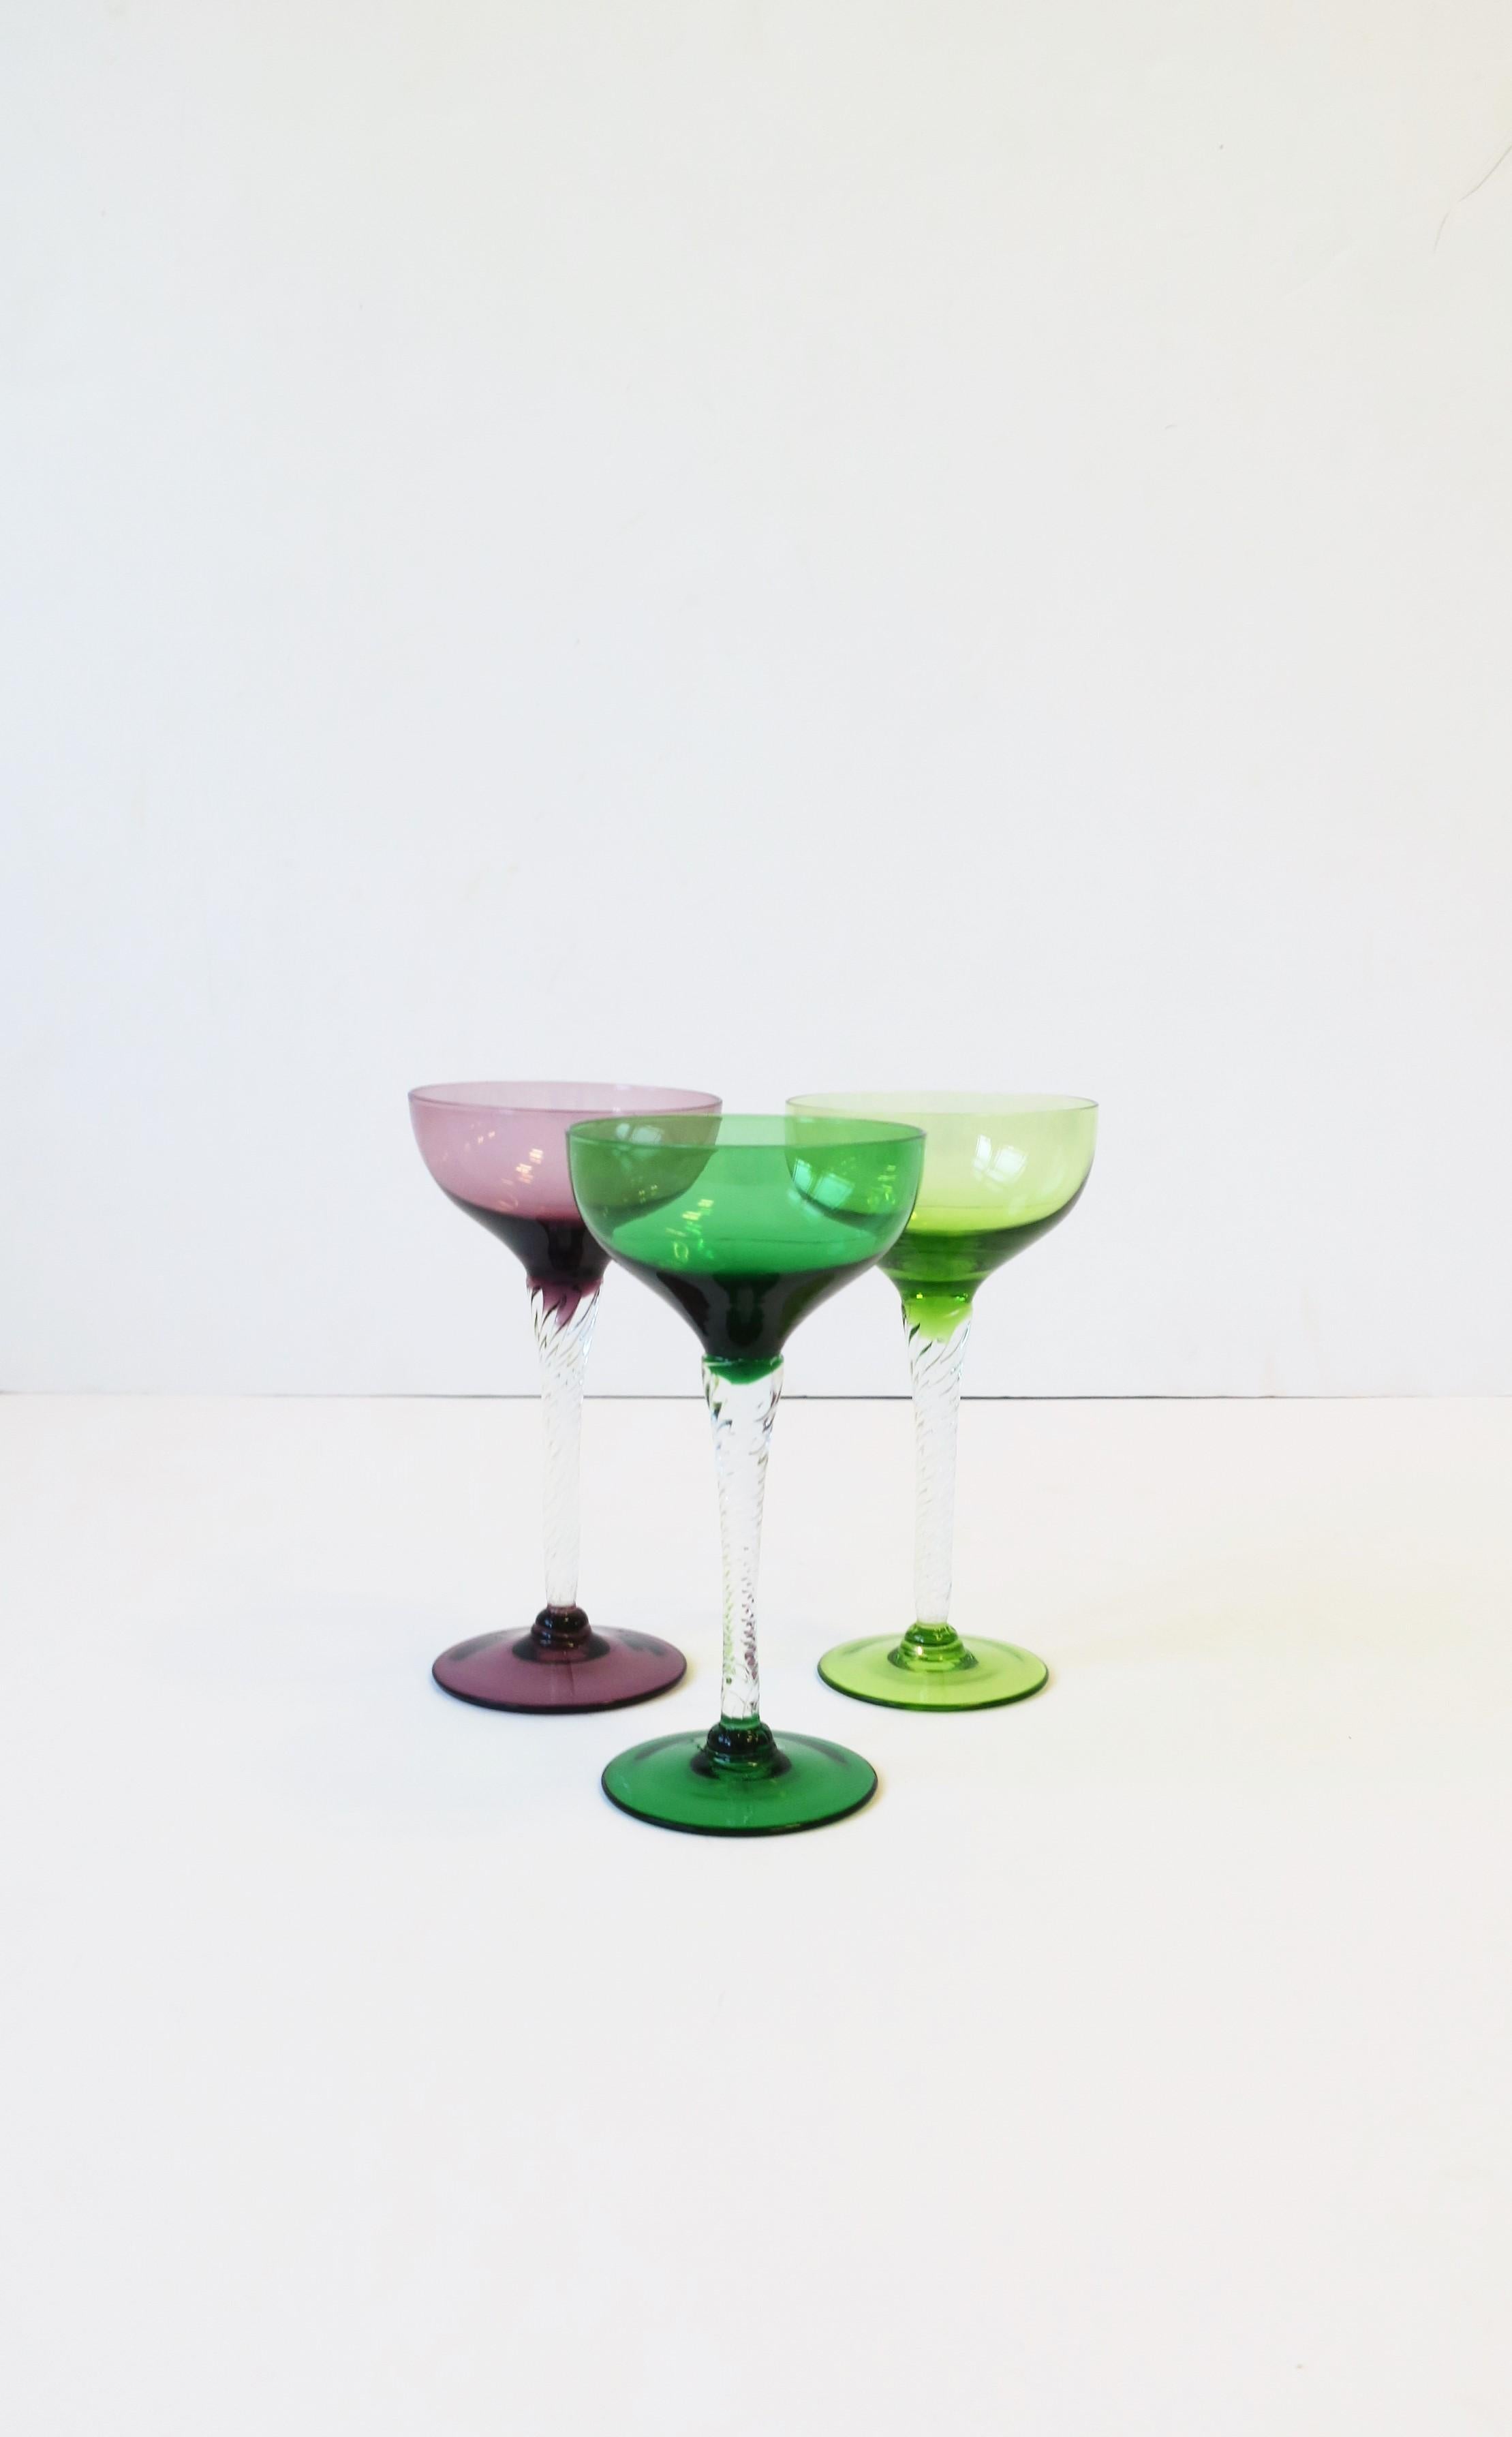 Ein schöner Satz von drei (3) mundgeblasenen Vintage-Glas-Cocktail- oder Champagner-Coupé-Gläsern in Smaragdgrün, Chartreusegrün und Violett/Aubergine mit einem transparenten gedrehten Stiel, circa Ende des 20. Jahrhunderts, Europa, möglicherweise